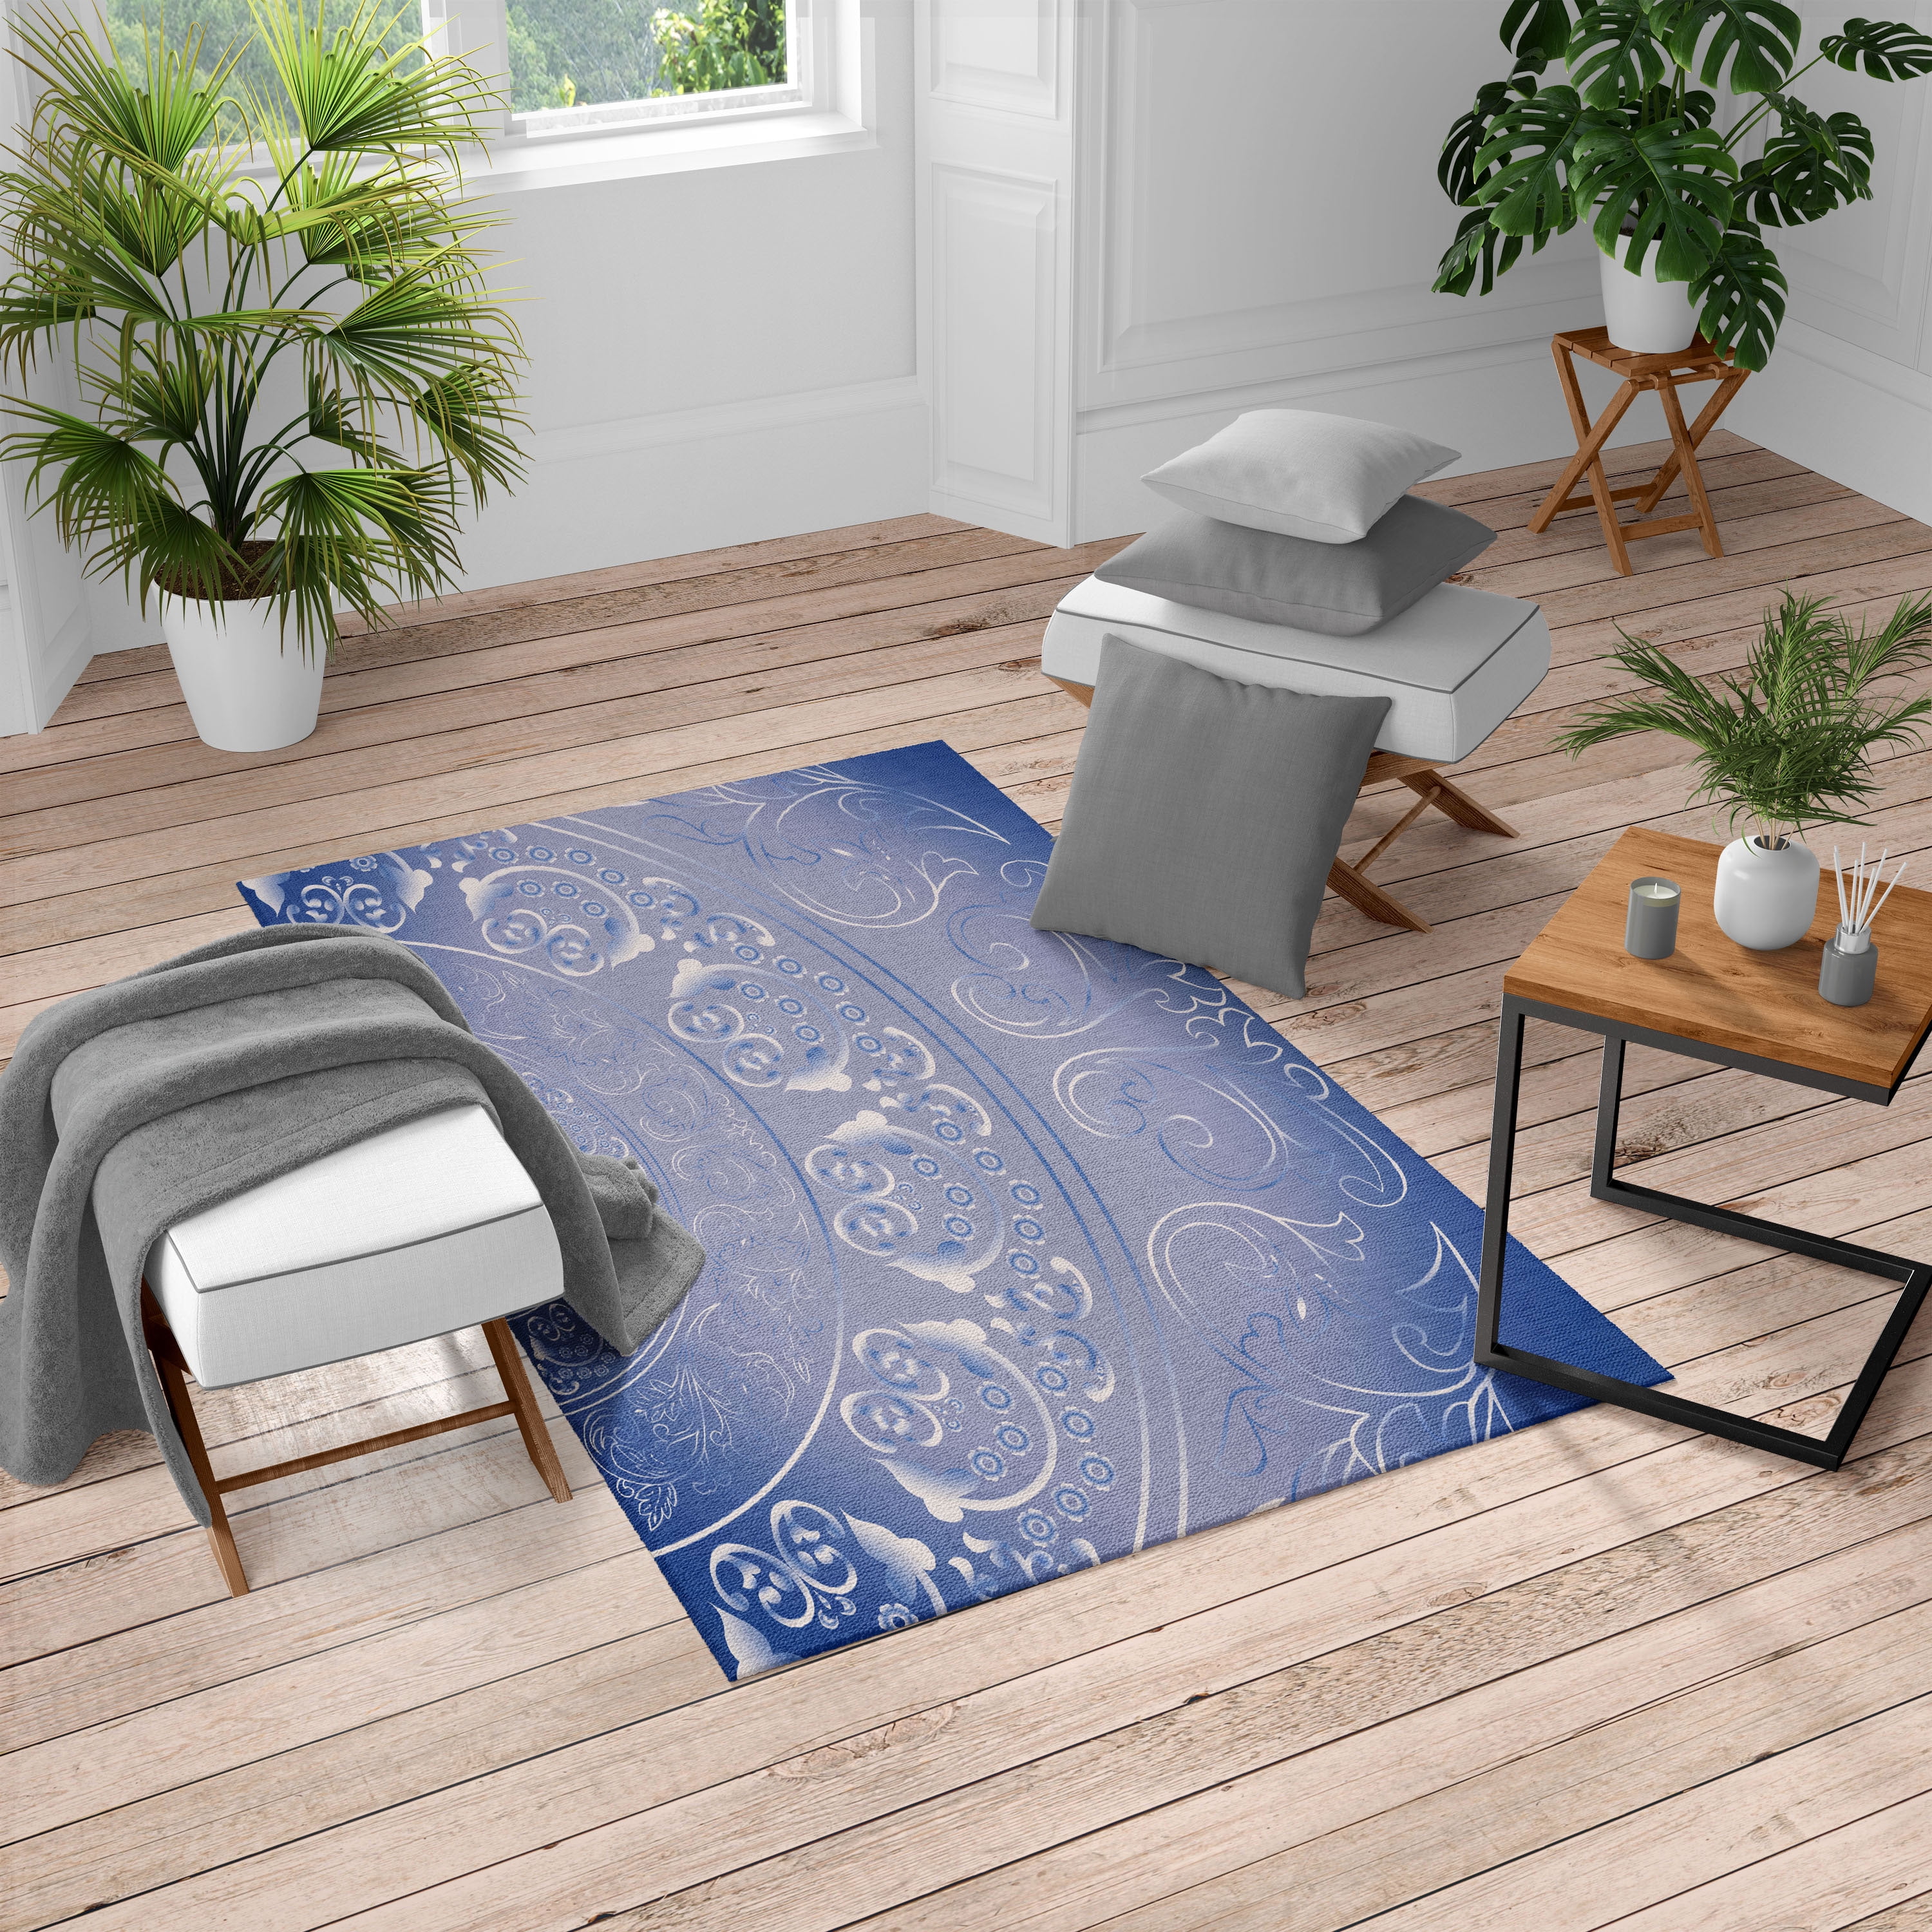 Cosmic Starry Sky Non-slip Round Soft Area Rug Floor Carpet Door Mat Home Decor 